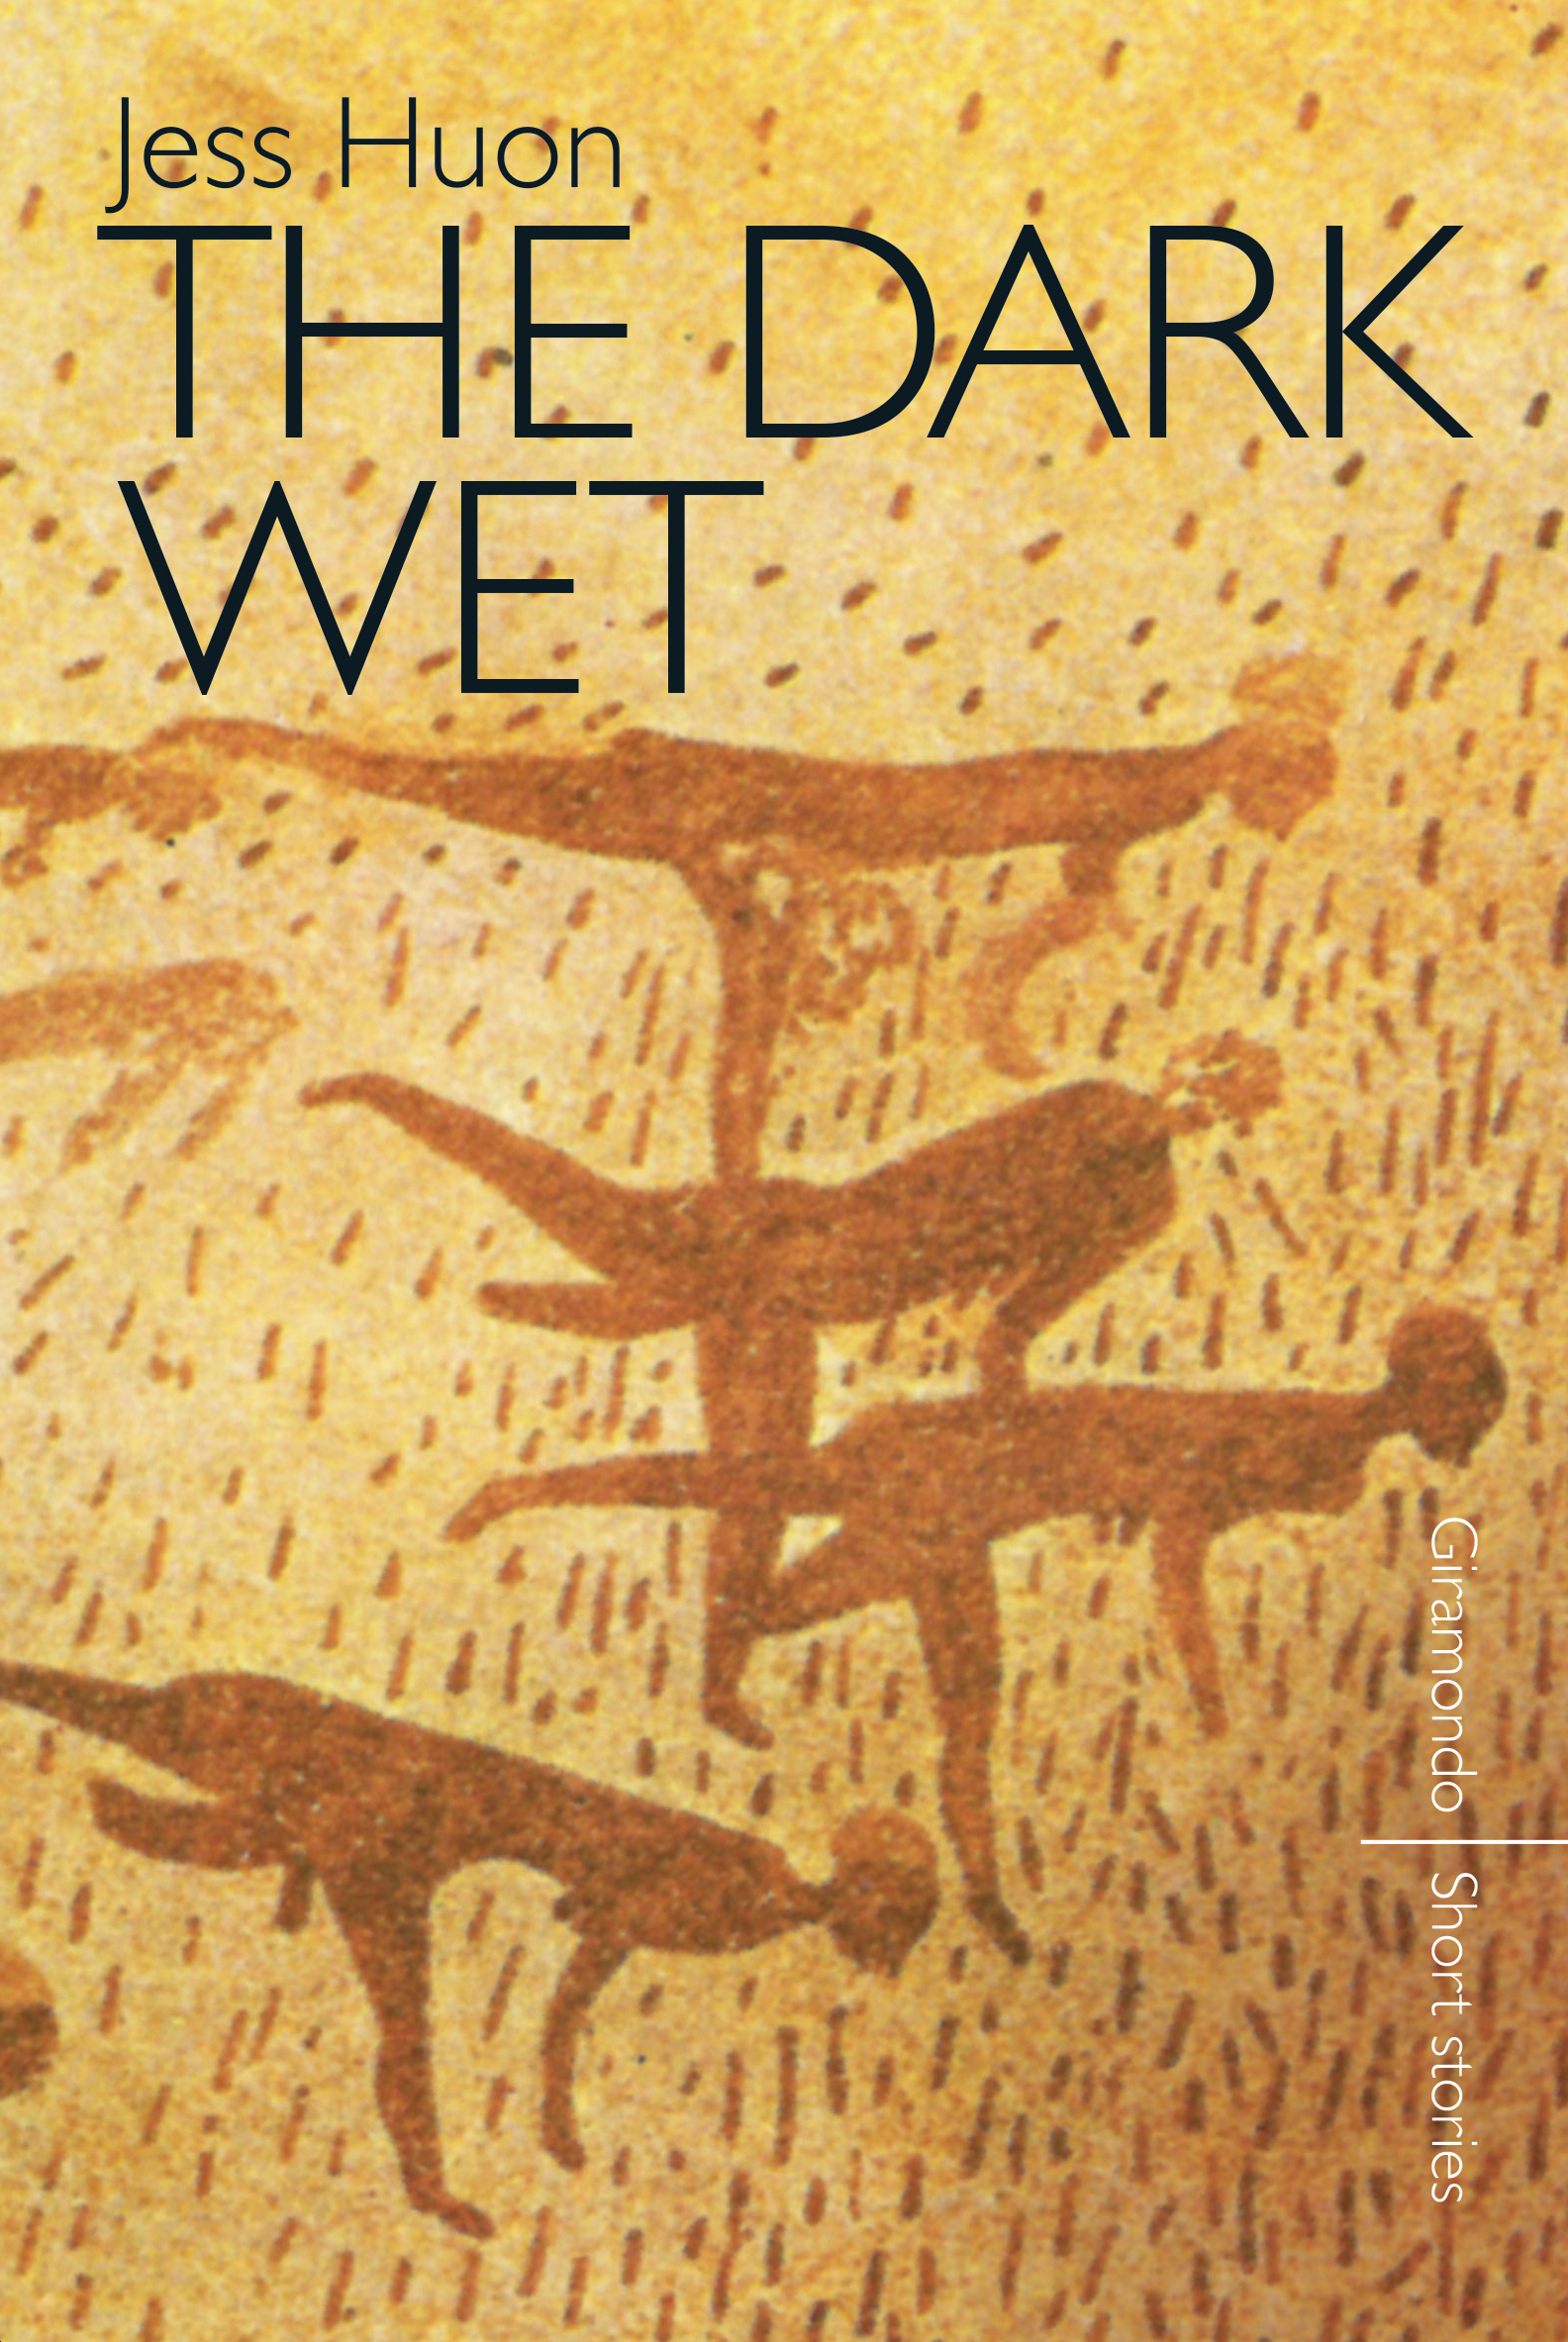 The Dark Wet